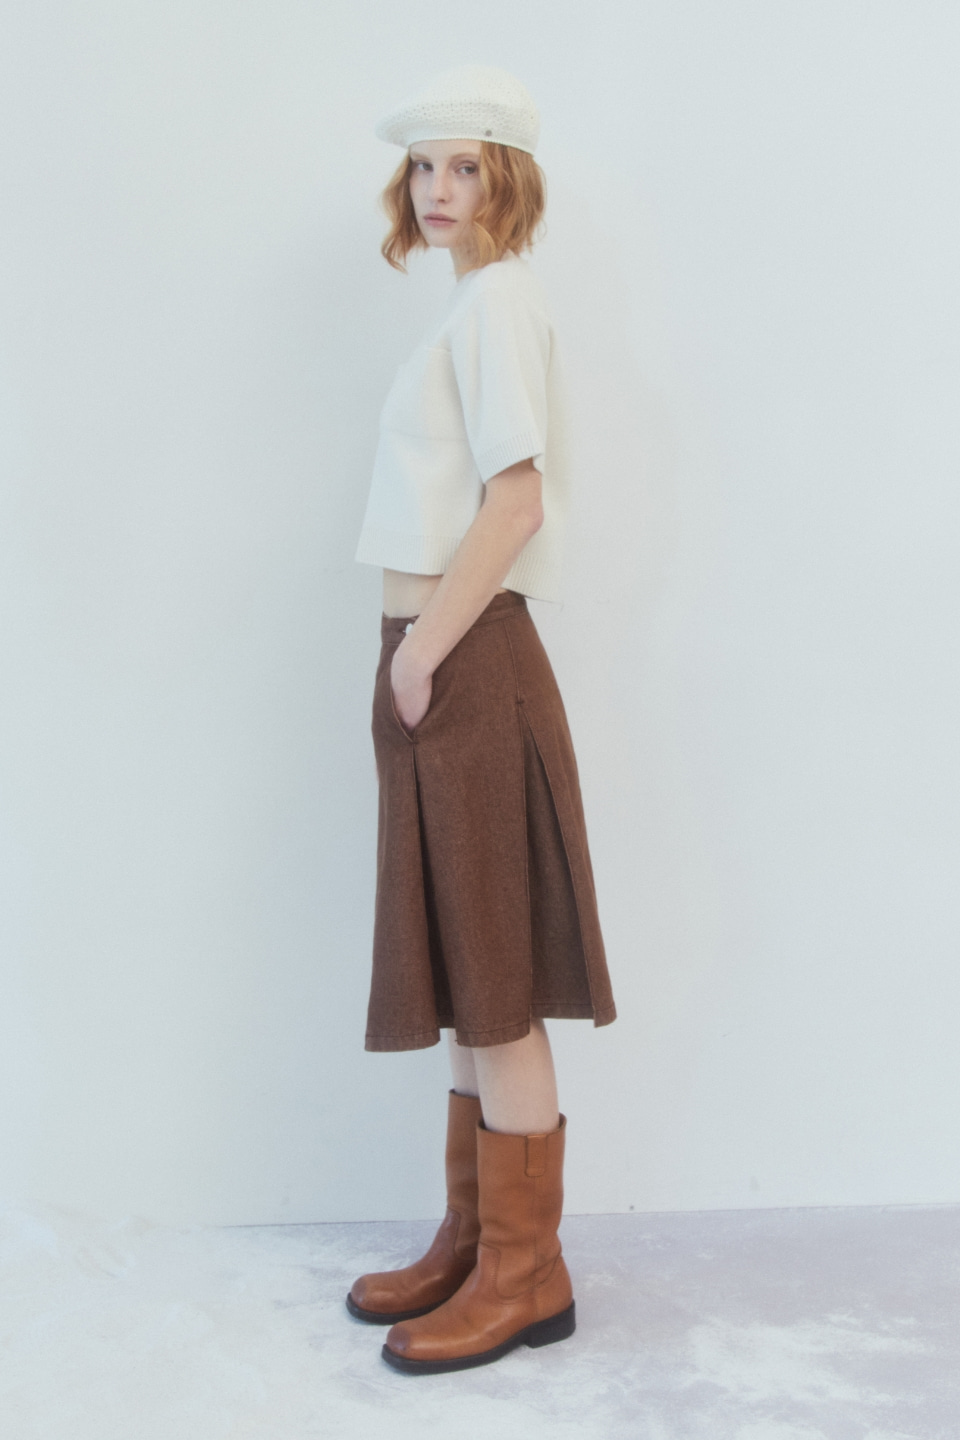 pintuck denim skirt - brown